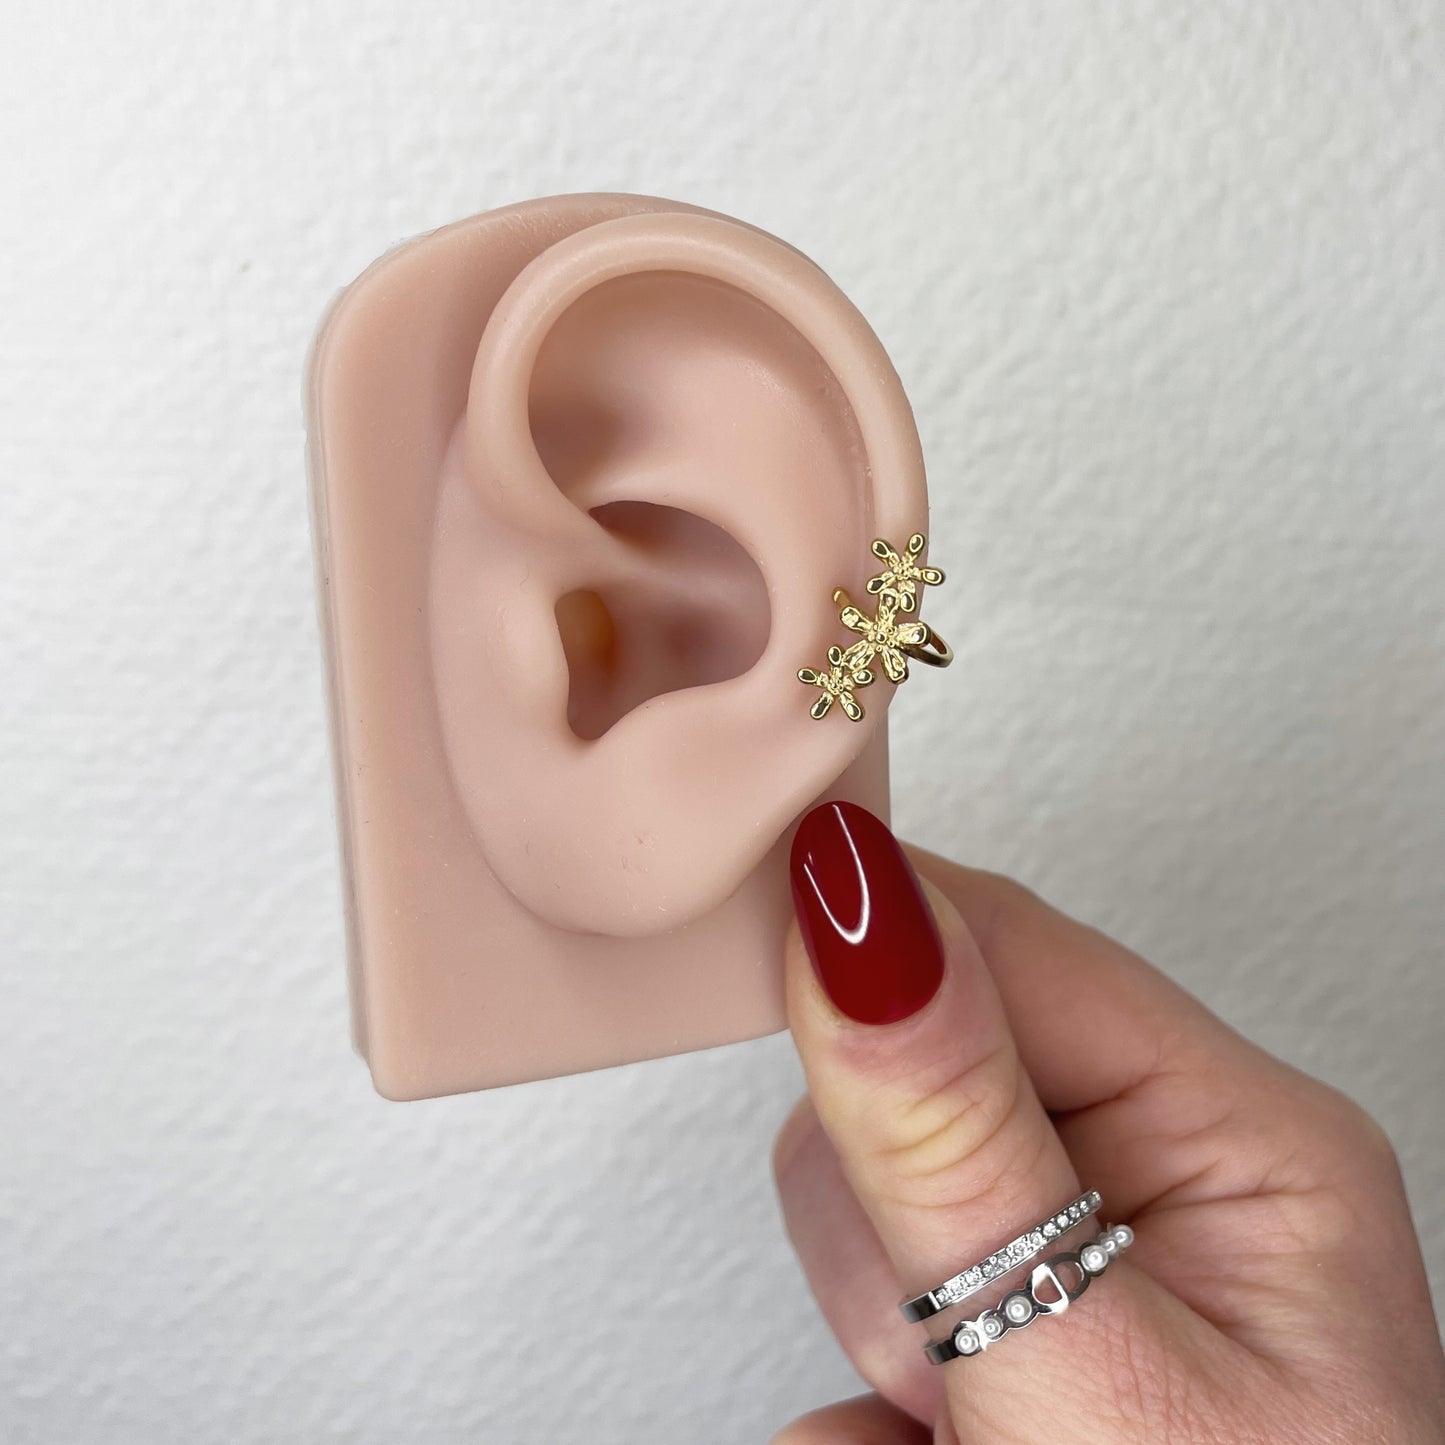 EAR CUFF CANDICE